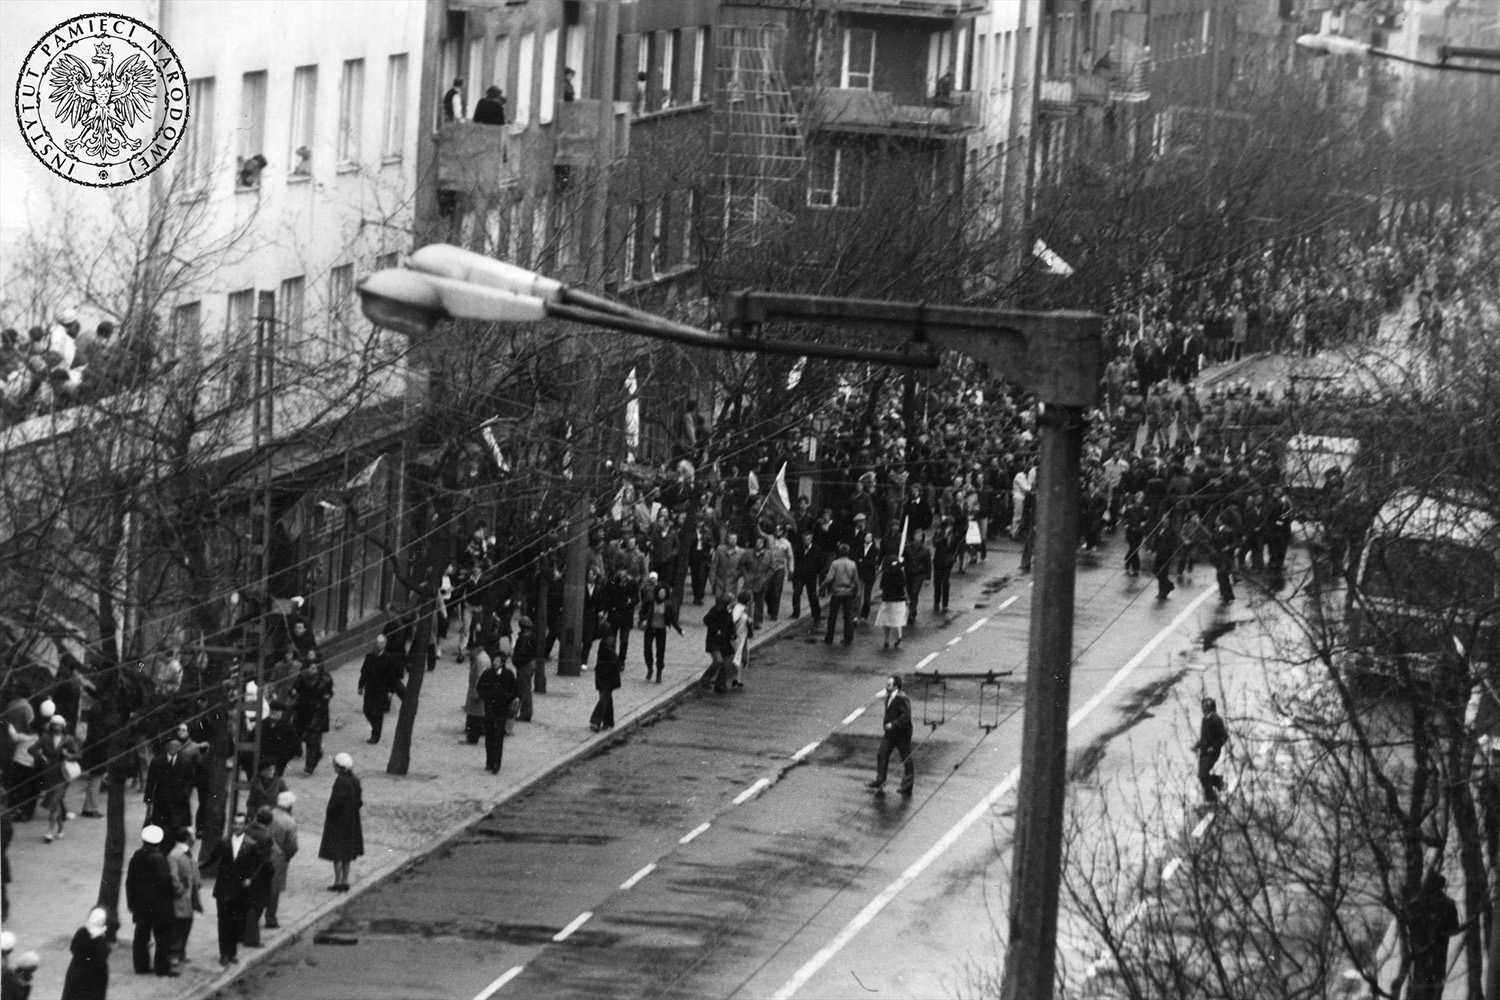 01.05.1982. Gdynia. Manifestacja idąca ulicą Świętojańską w Gdyni. W głębi widać tłum ludzi przechodzący przez kordon milicjantów stojący w poprzek drogi